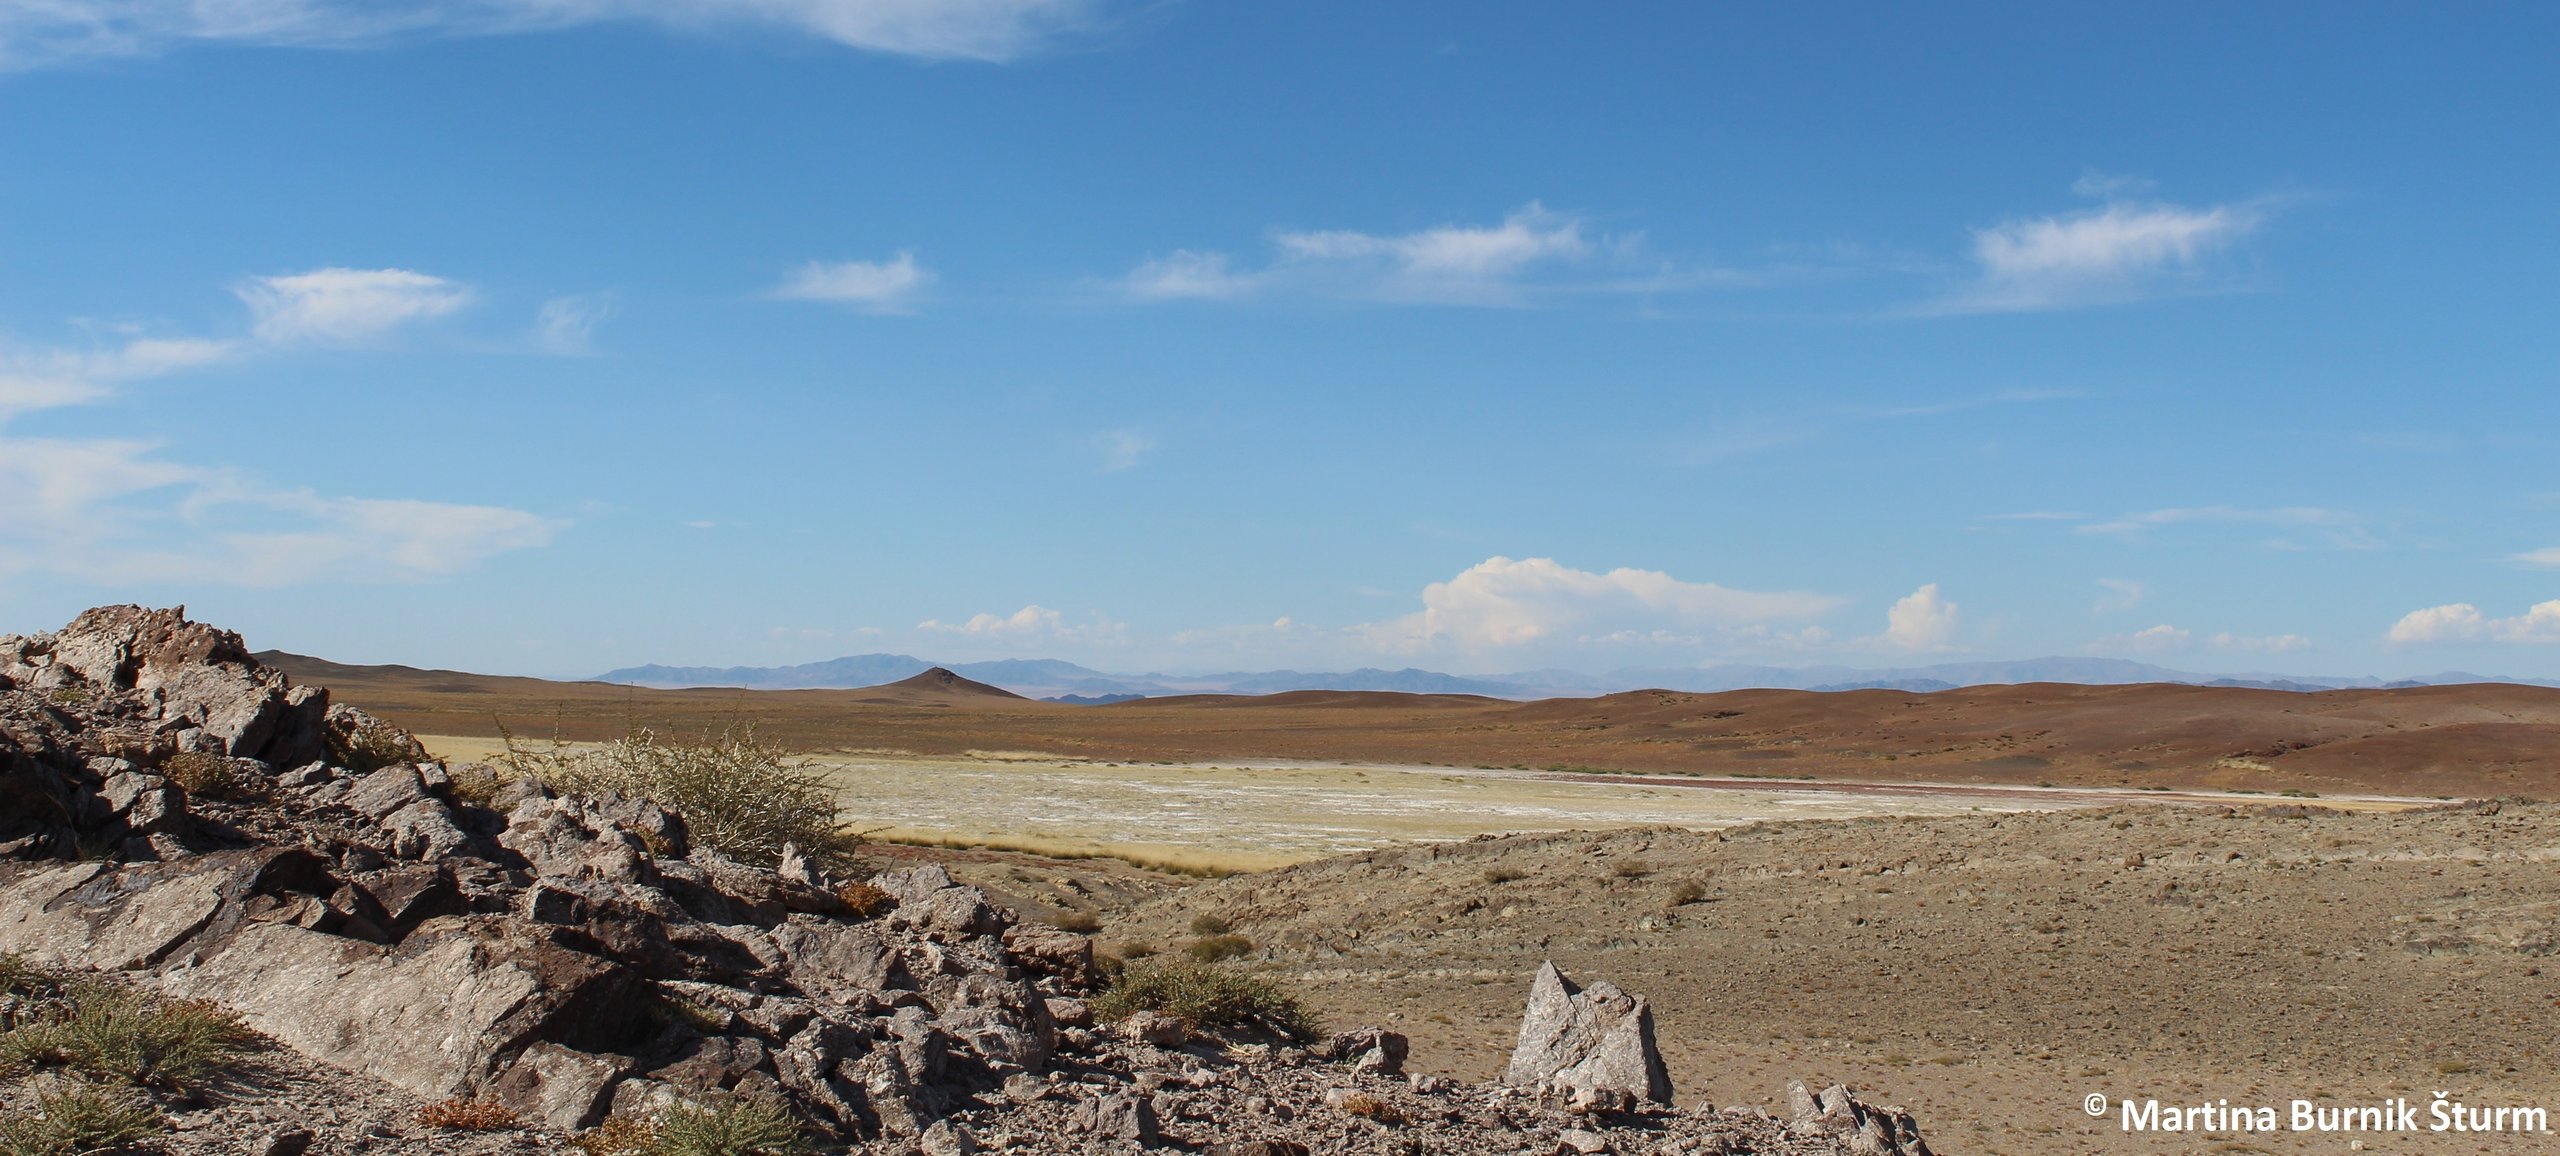 Foto zeigt die Wüste Gobi